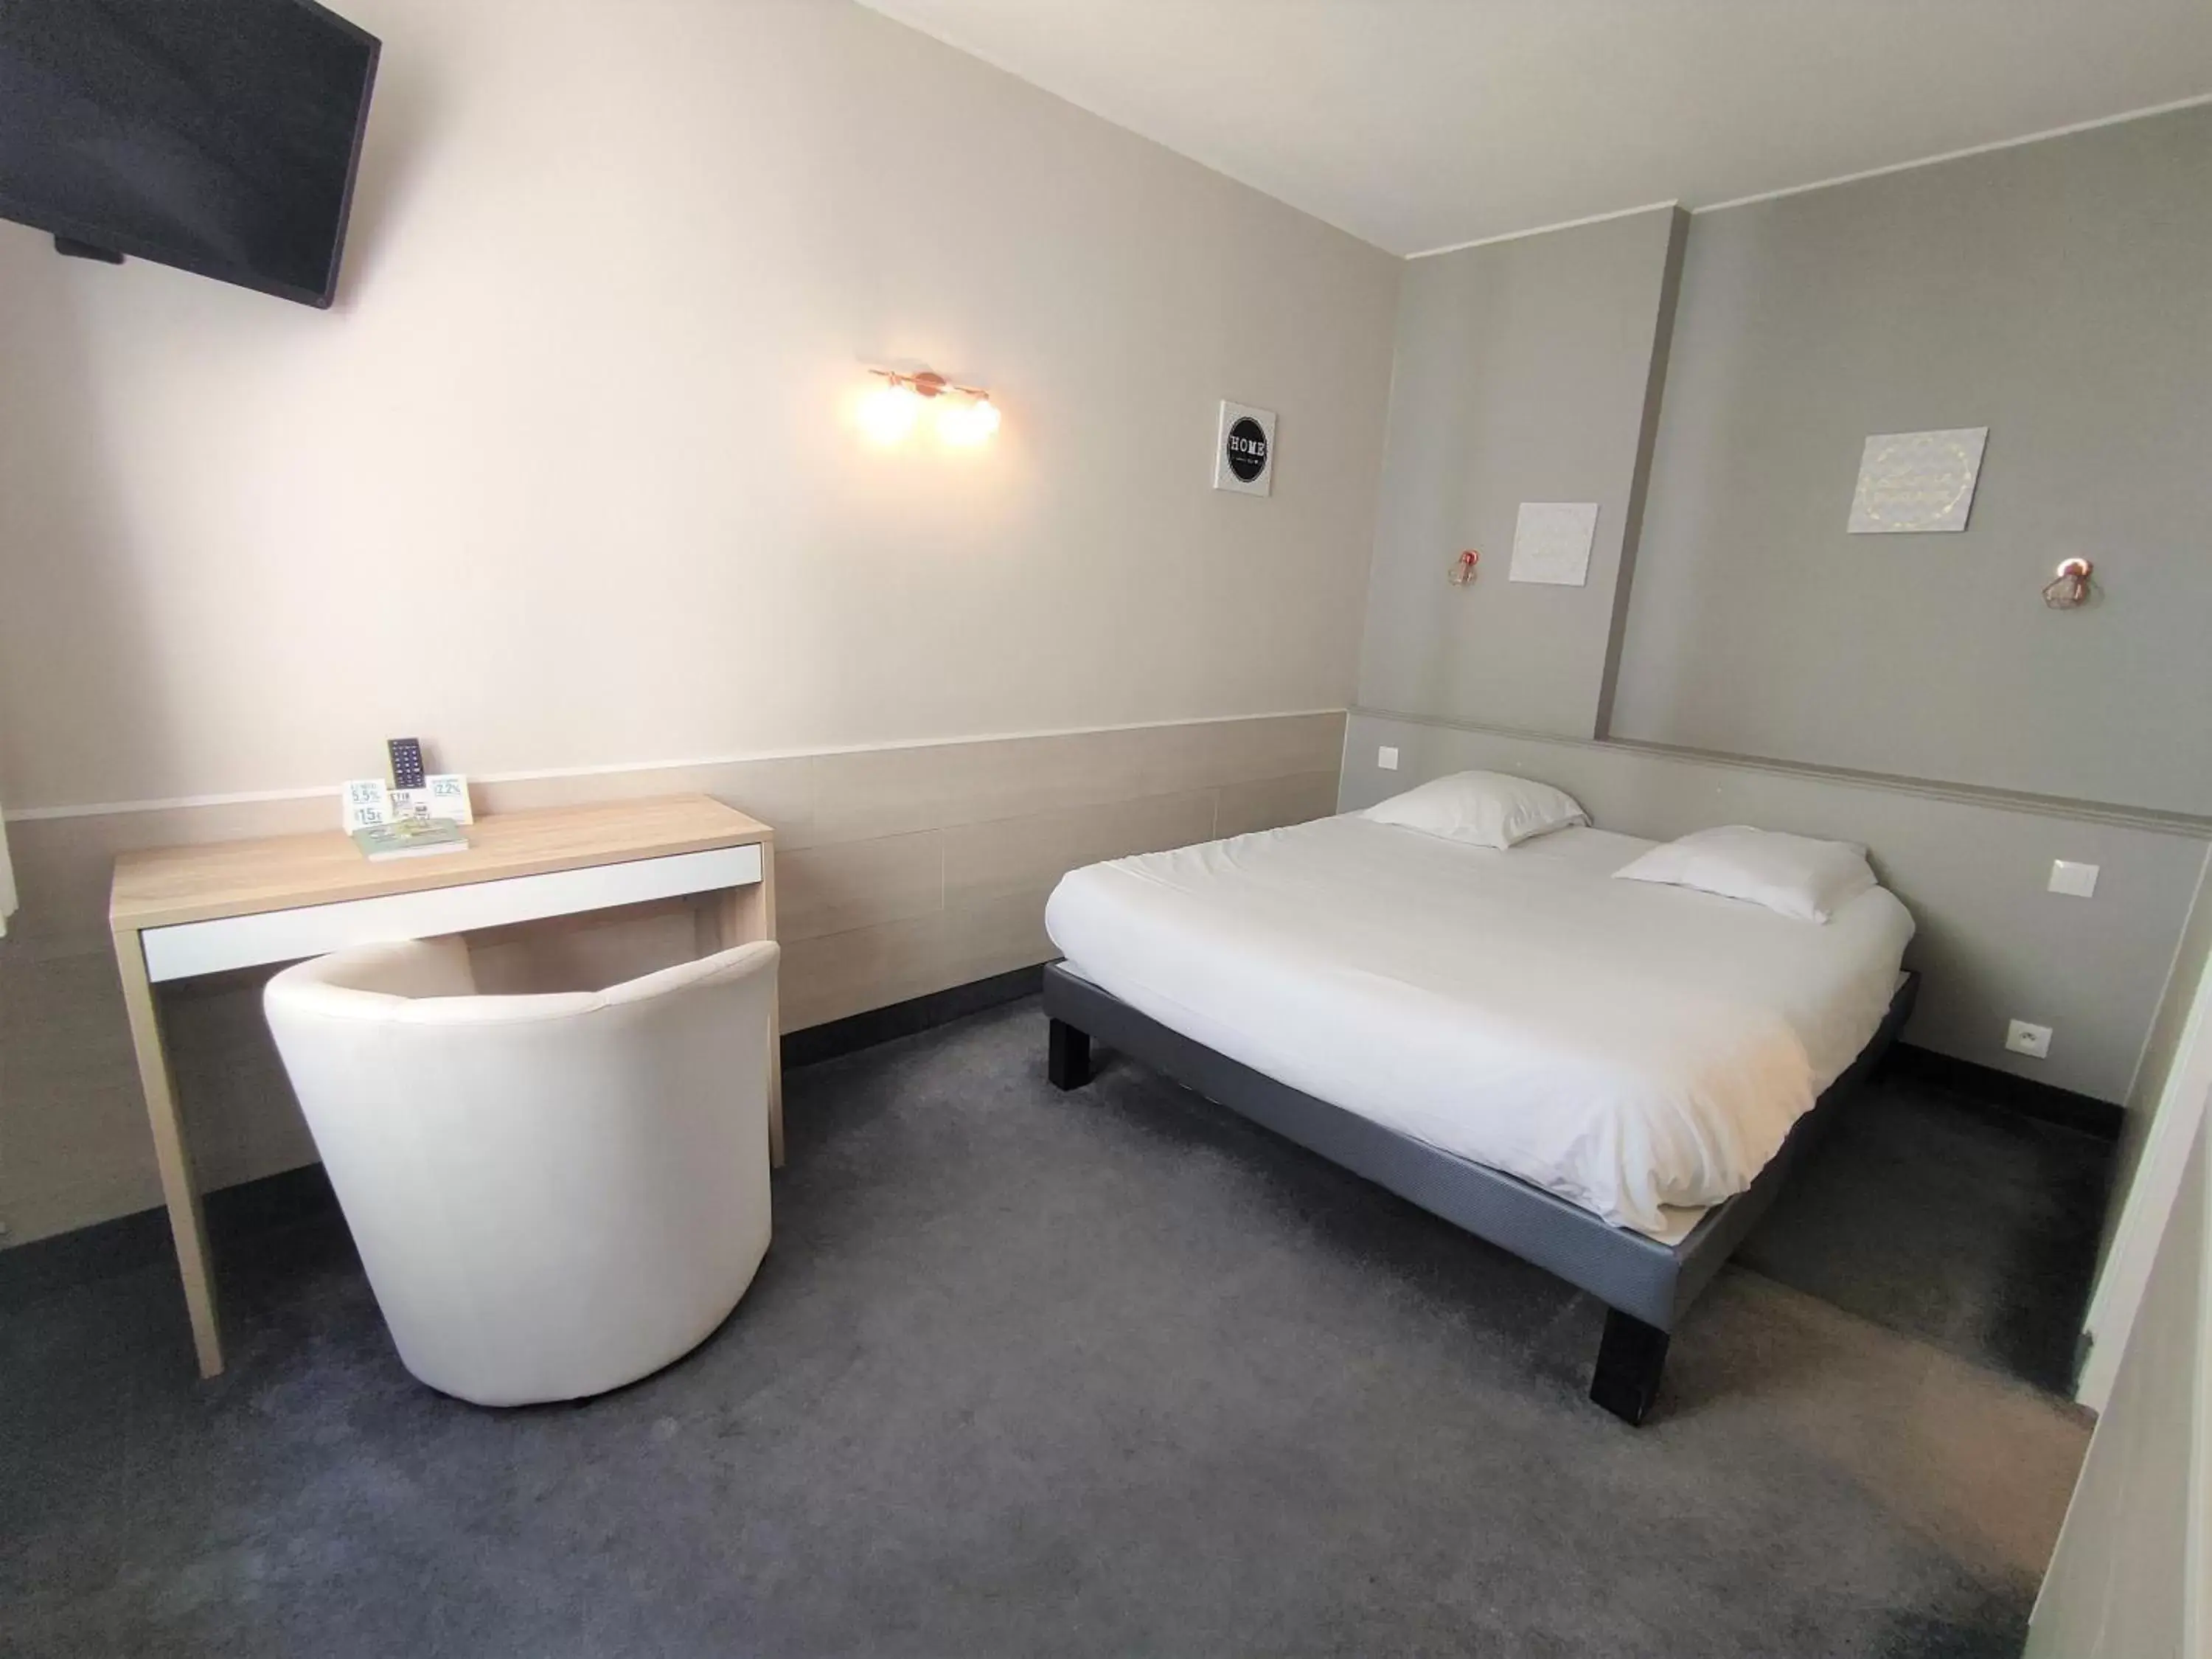 Bed in Cit'Hotel Limoges Centre - Lion d'or